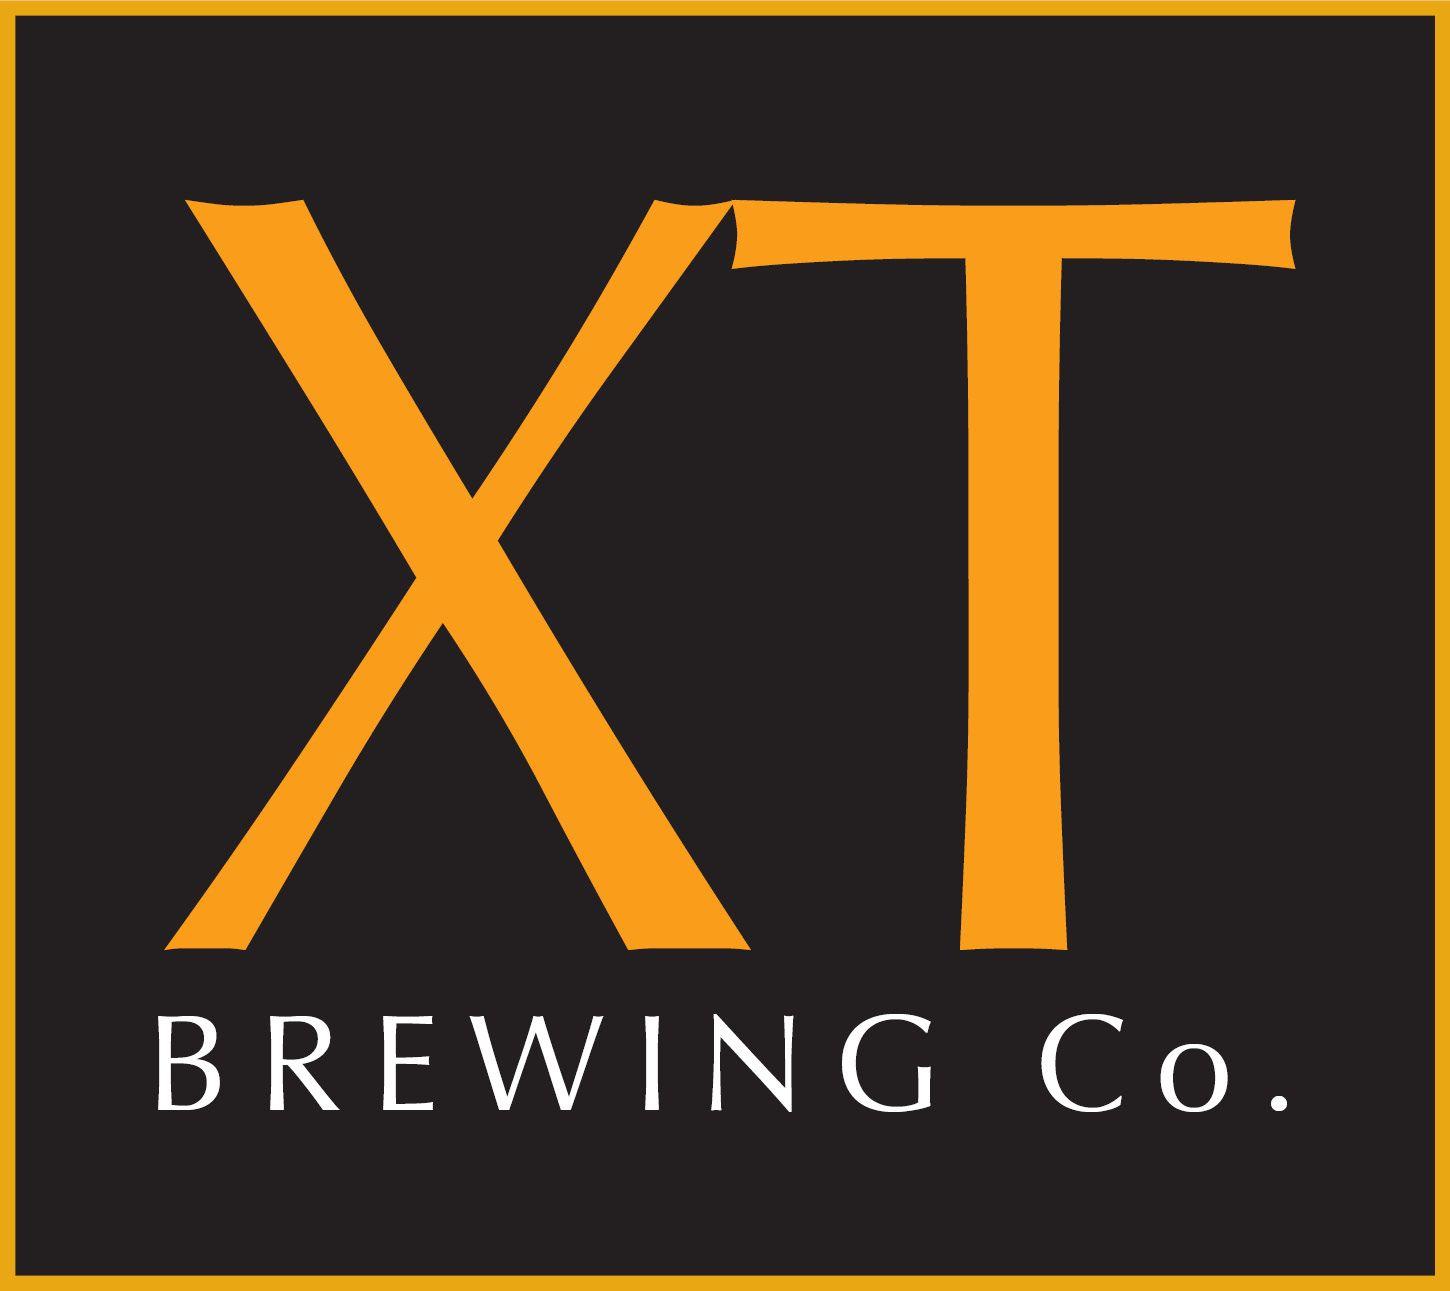 XT Logo - XT Brewing Company (logo)